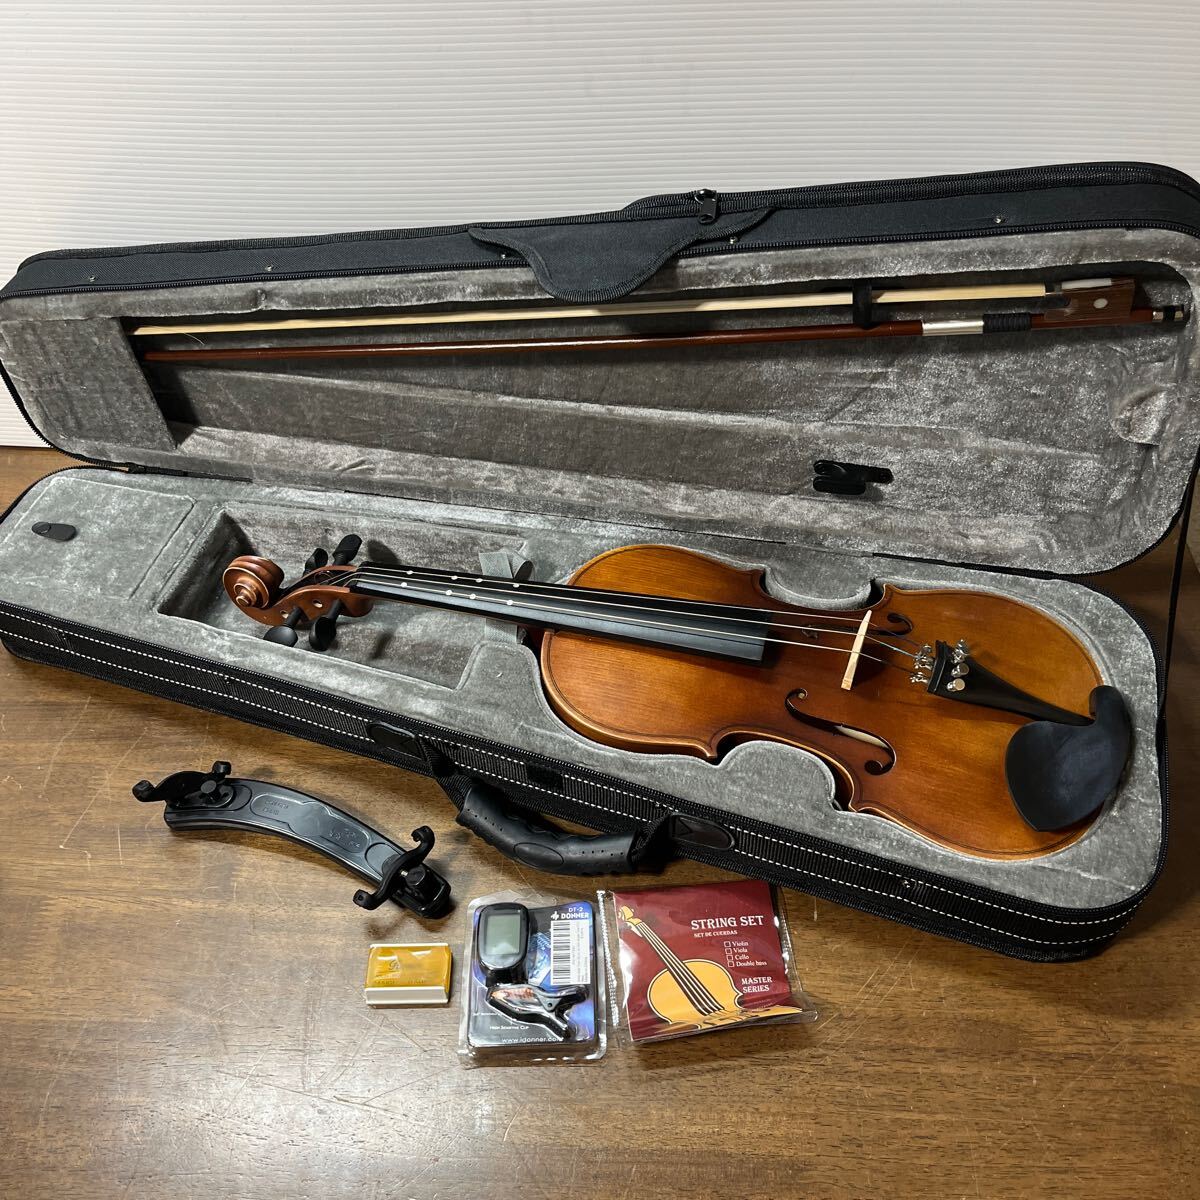 Eastar バイオリン 初心者セット 艶消し 指板マークチューナー 予備弦セット付きEVA-3 練習 趣味 楽器 ケース入り ヴァイオリンの画像1